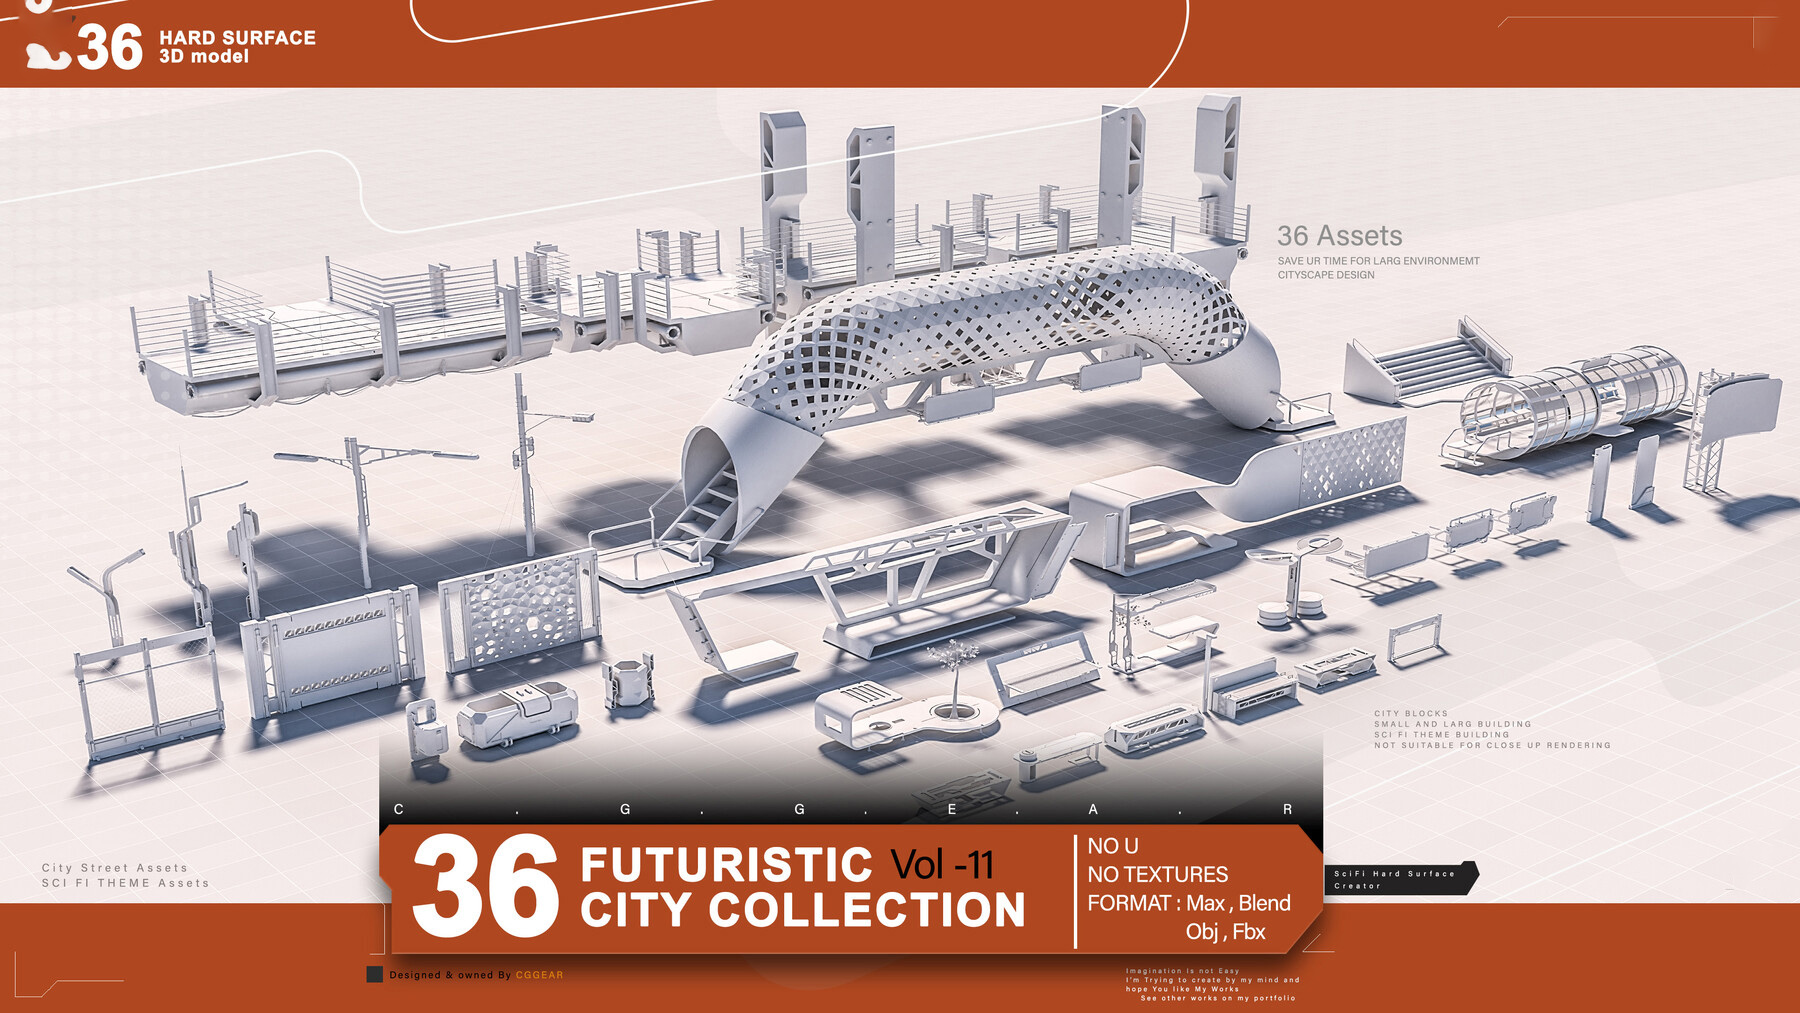 FUTURISTIC (SCI-FI) CITY COLLECTION VOL 11